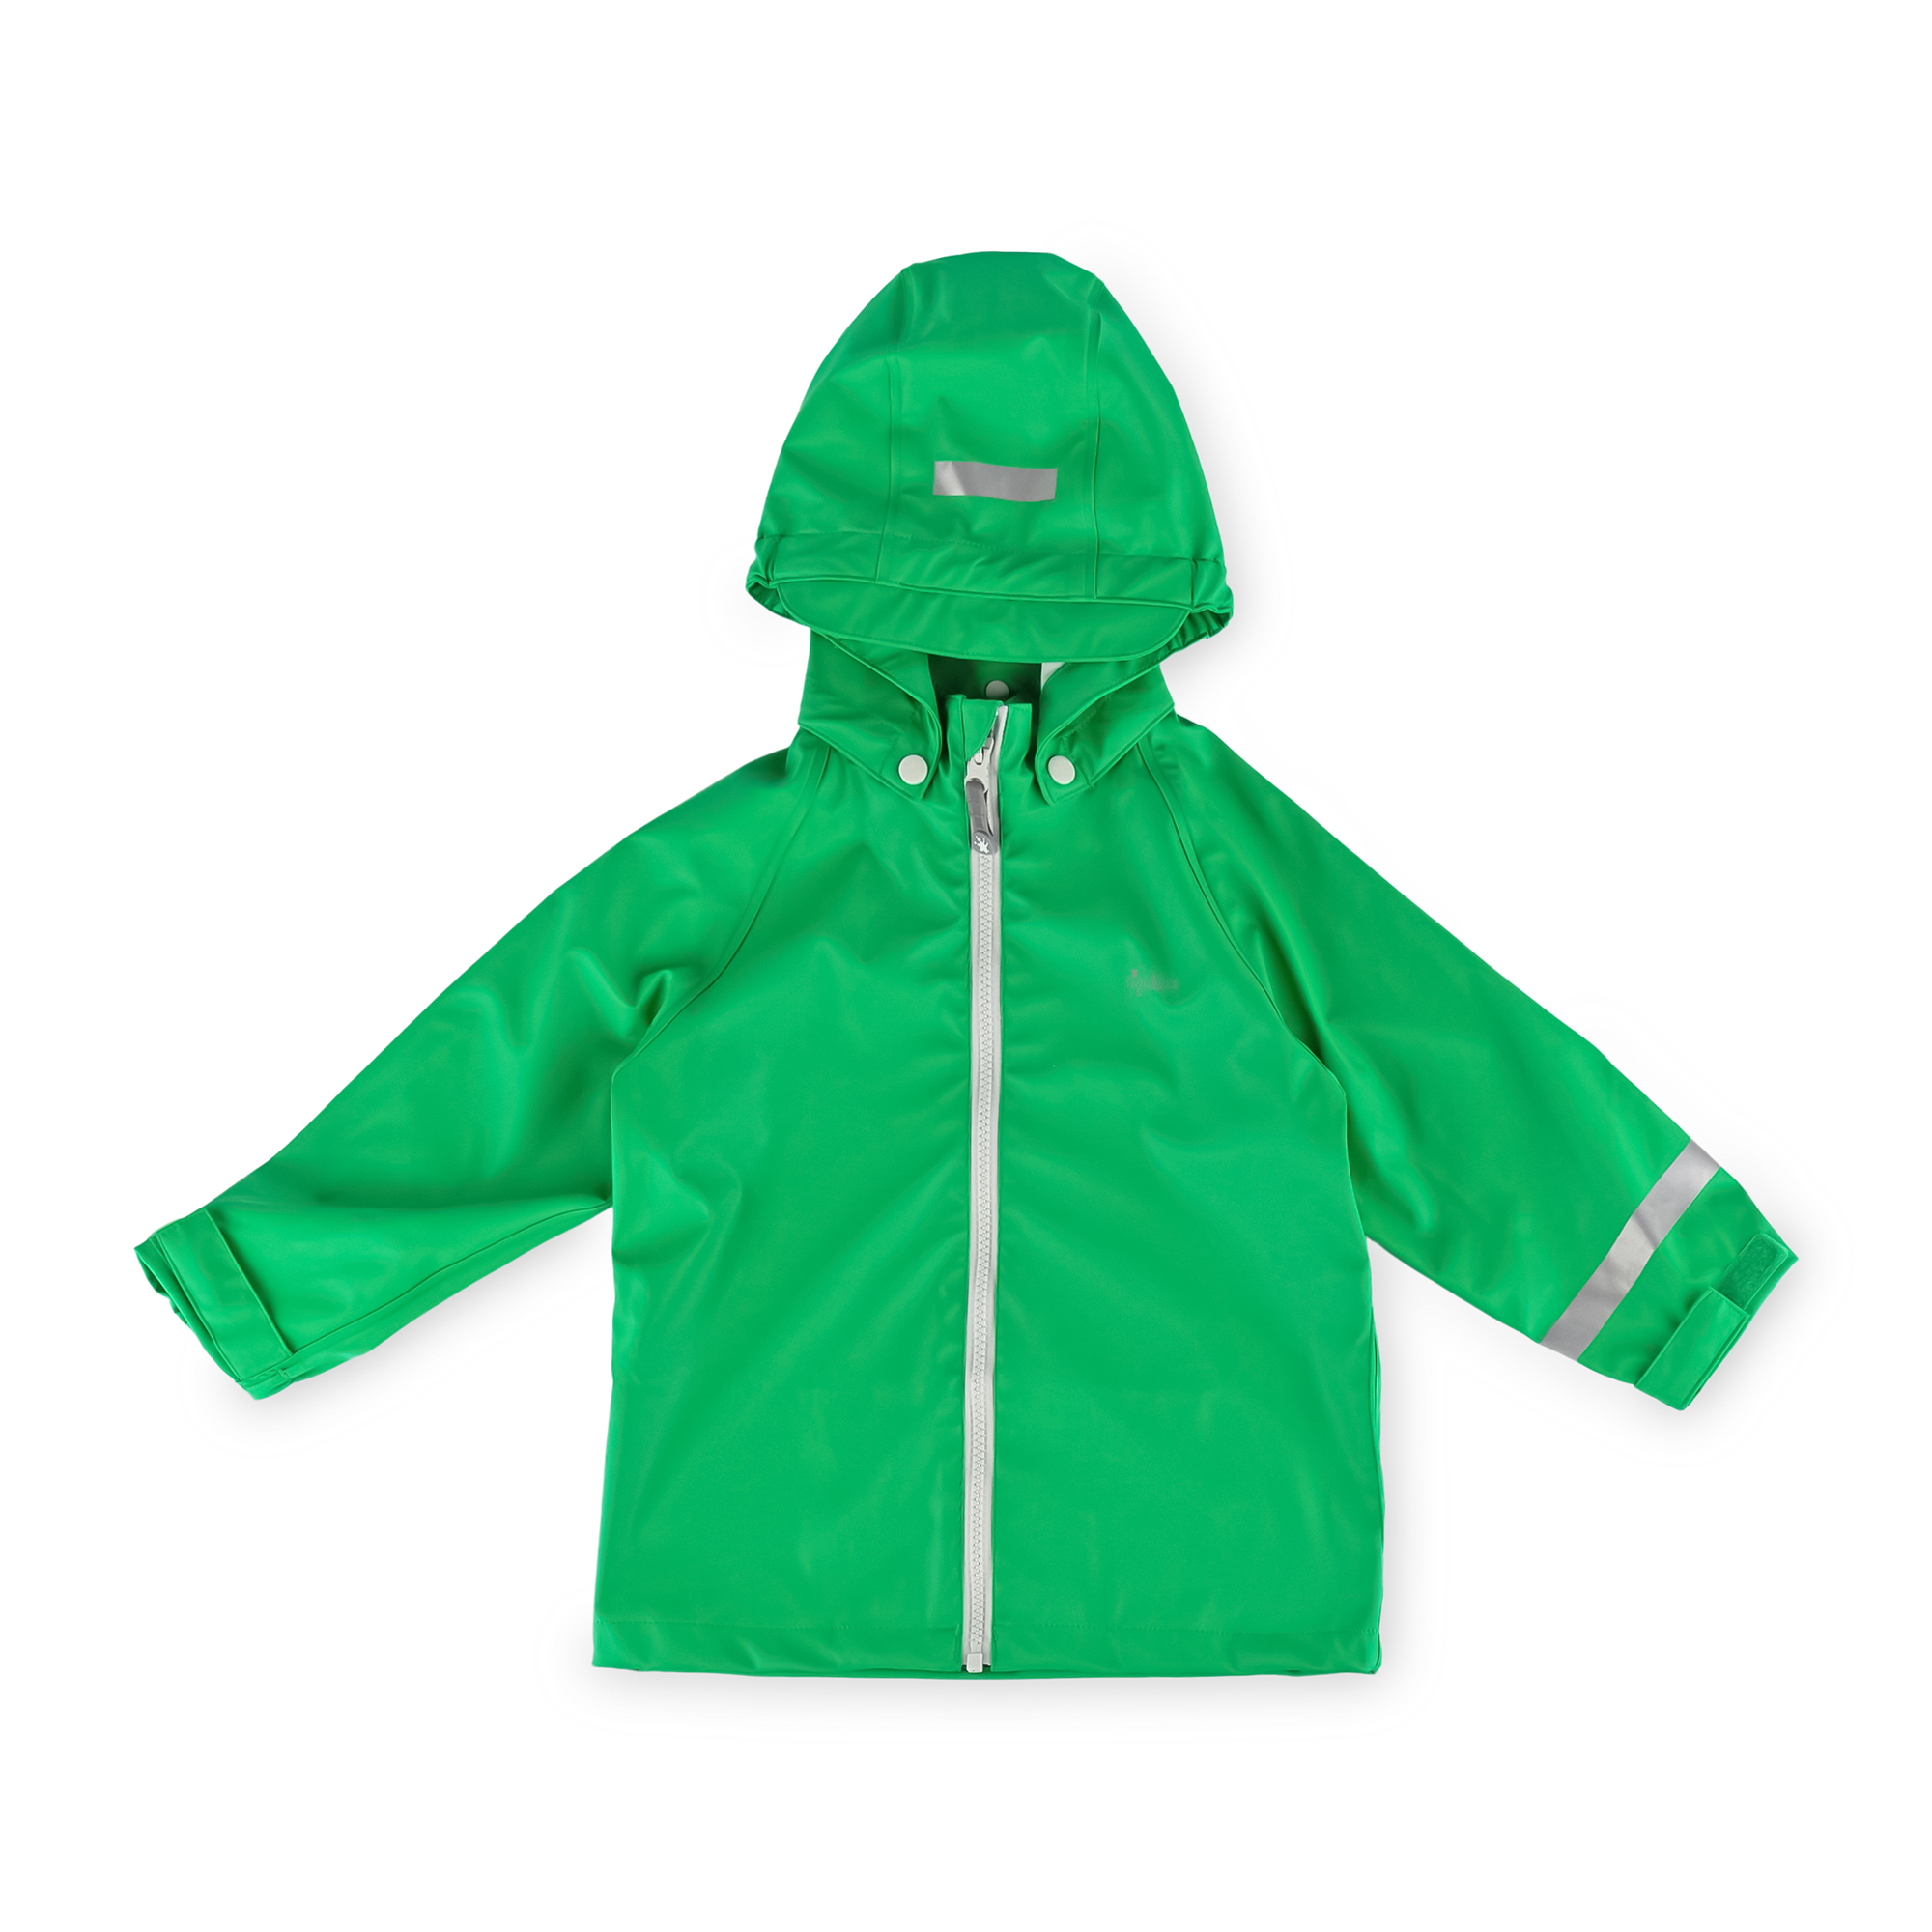 Kids' rain jacket, bright green